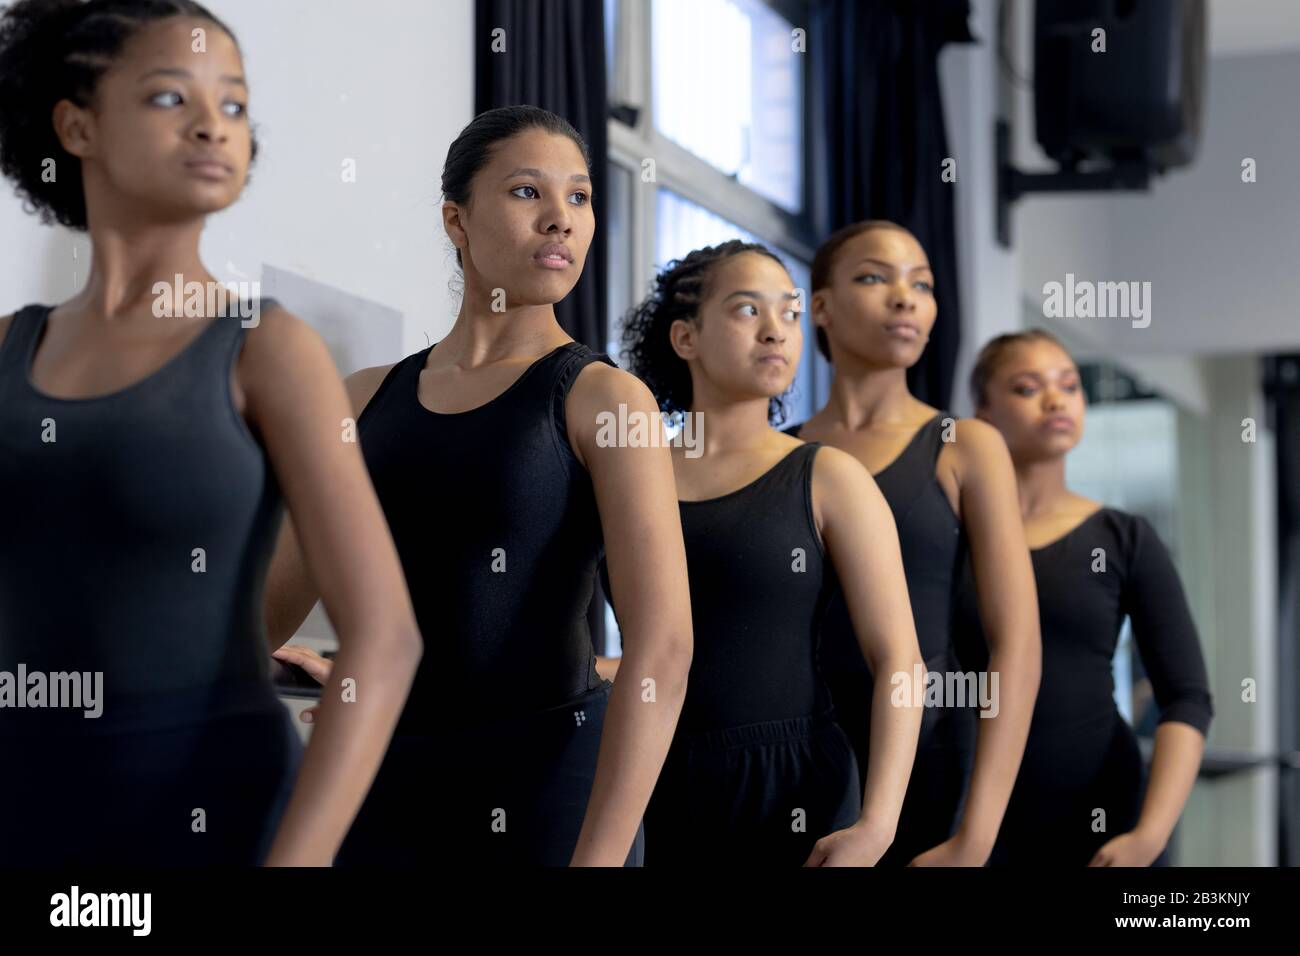 Groupe de danseuses féminines pratiquant une routine de danse dans un studio Banque D'Images